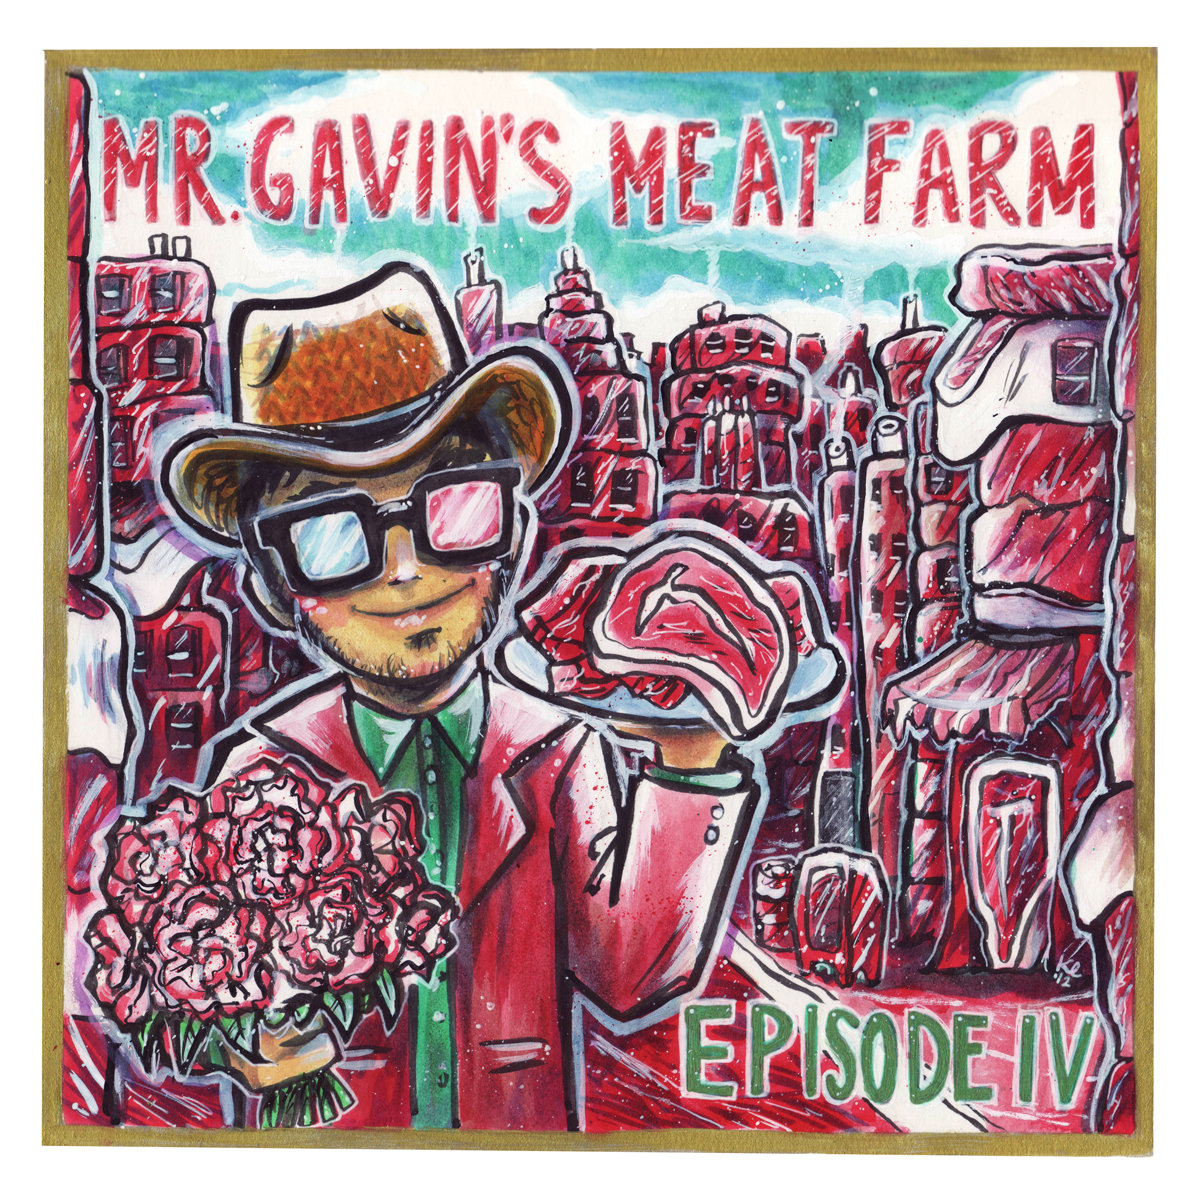 Episode IV by Mr. Gavin's Meat Farm